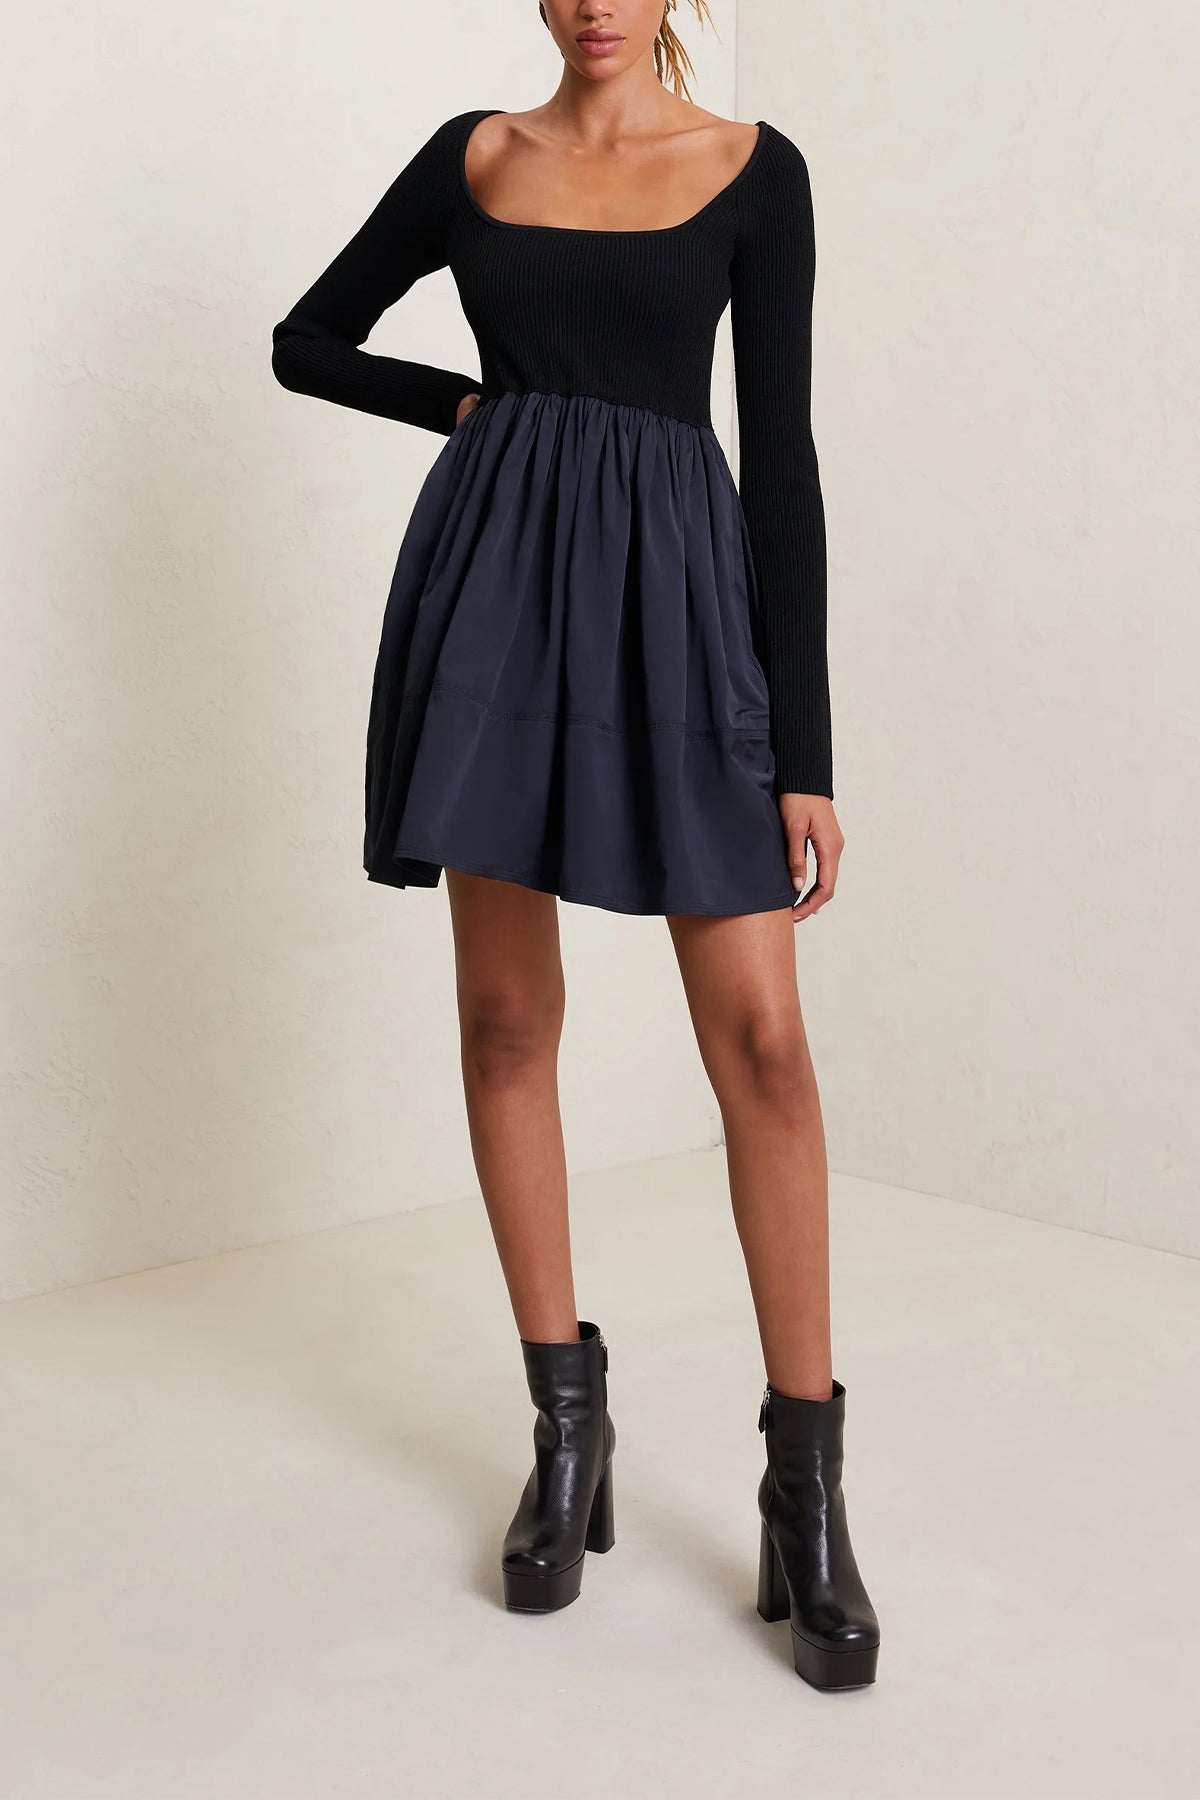 Maddie Mini Dress in Black Navy - shop-olivia.com